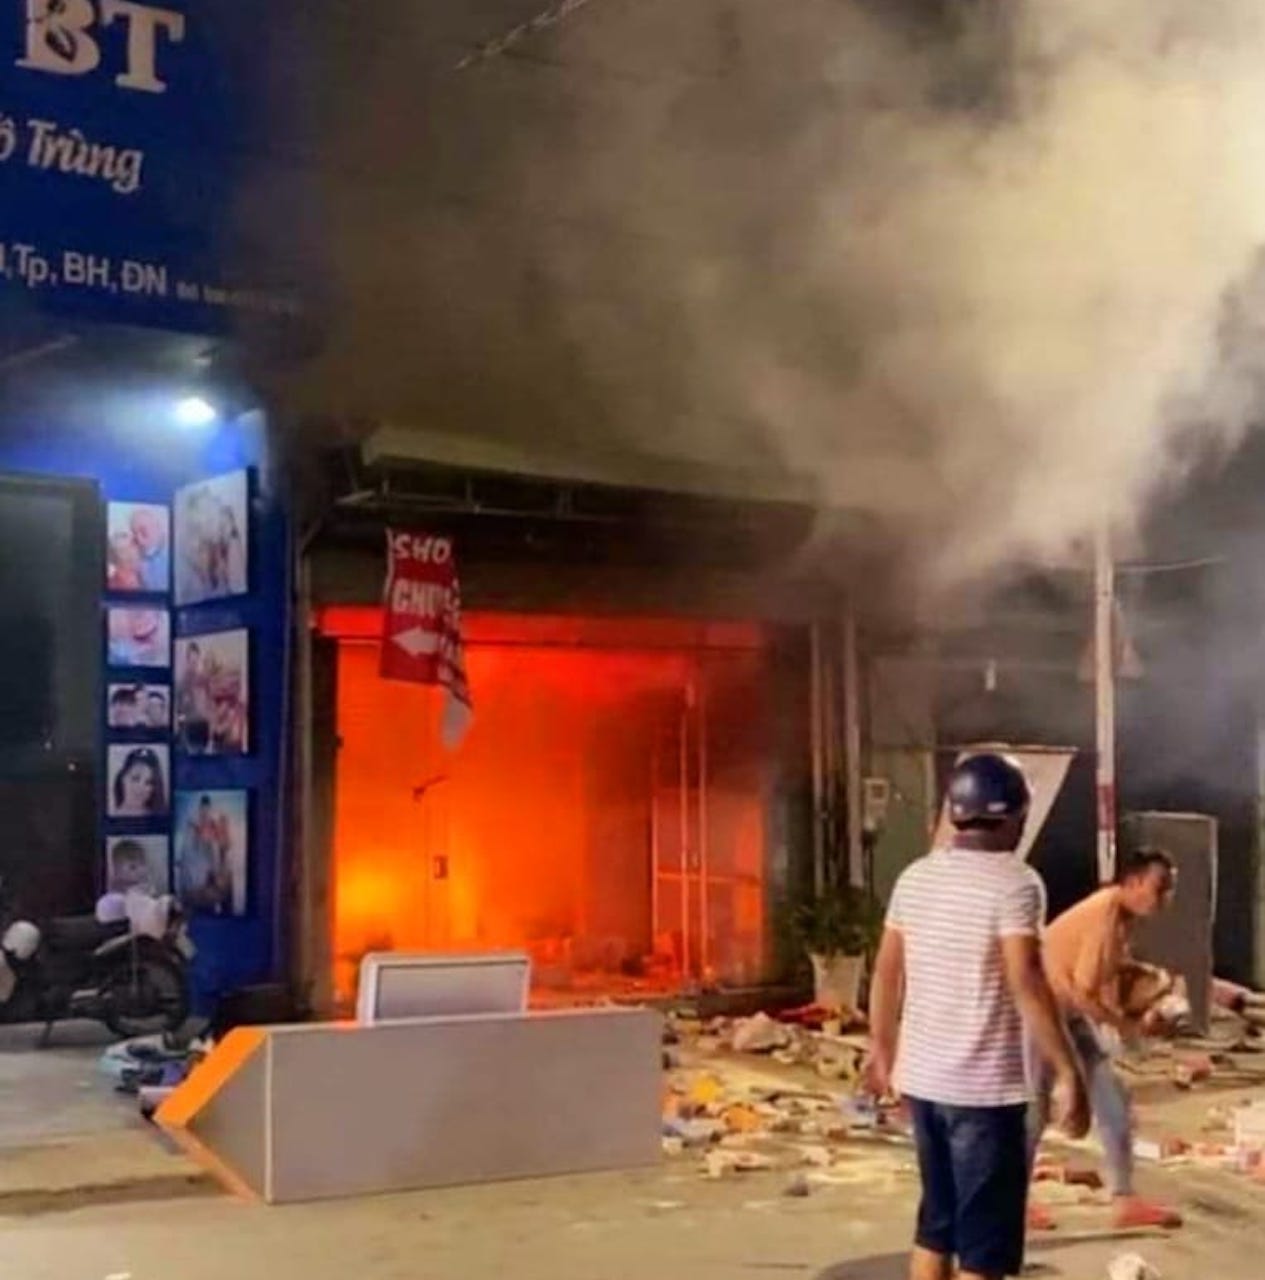 Một cửa hàng bán sản phẩm mẹ và bé ở Đồng Nai bị thiêu rụi trong đêm  - Ảnh 2.